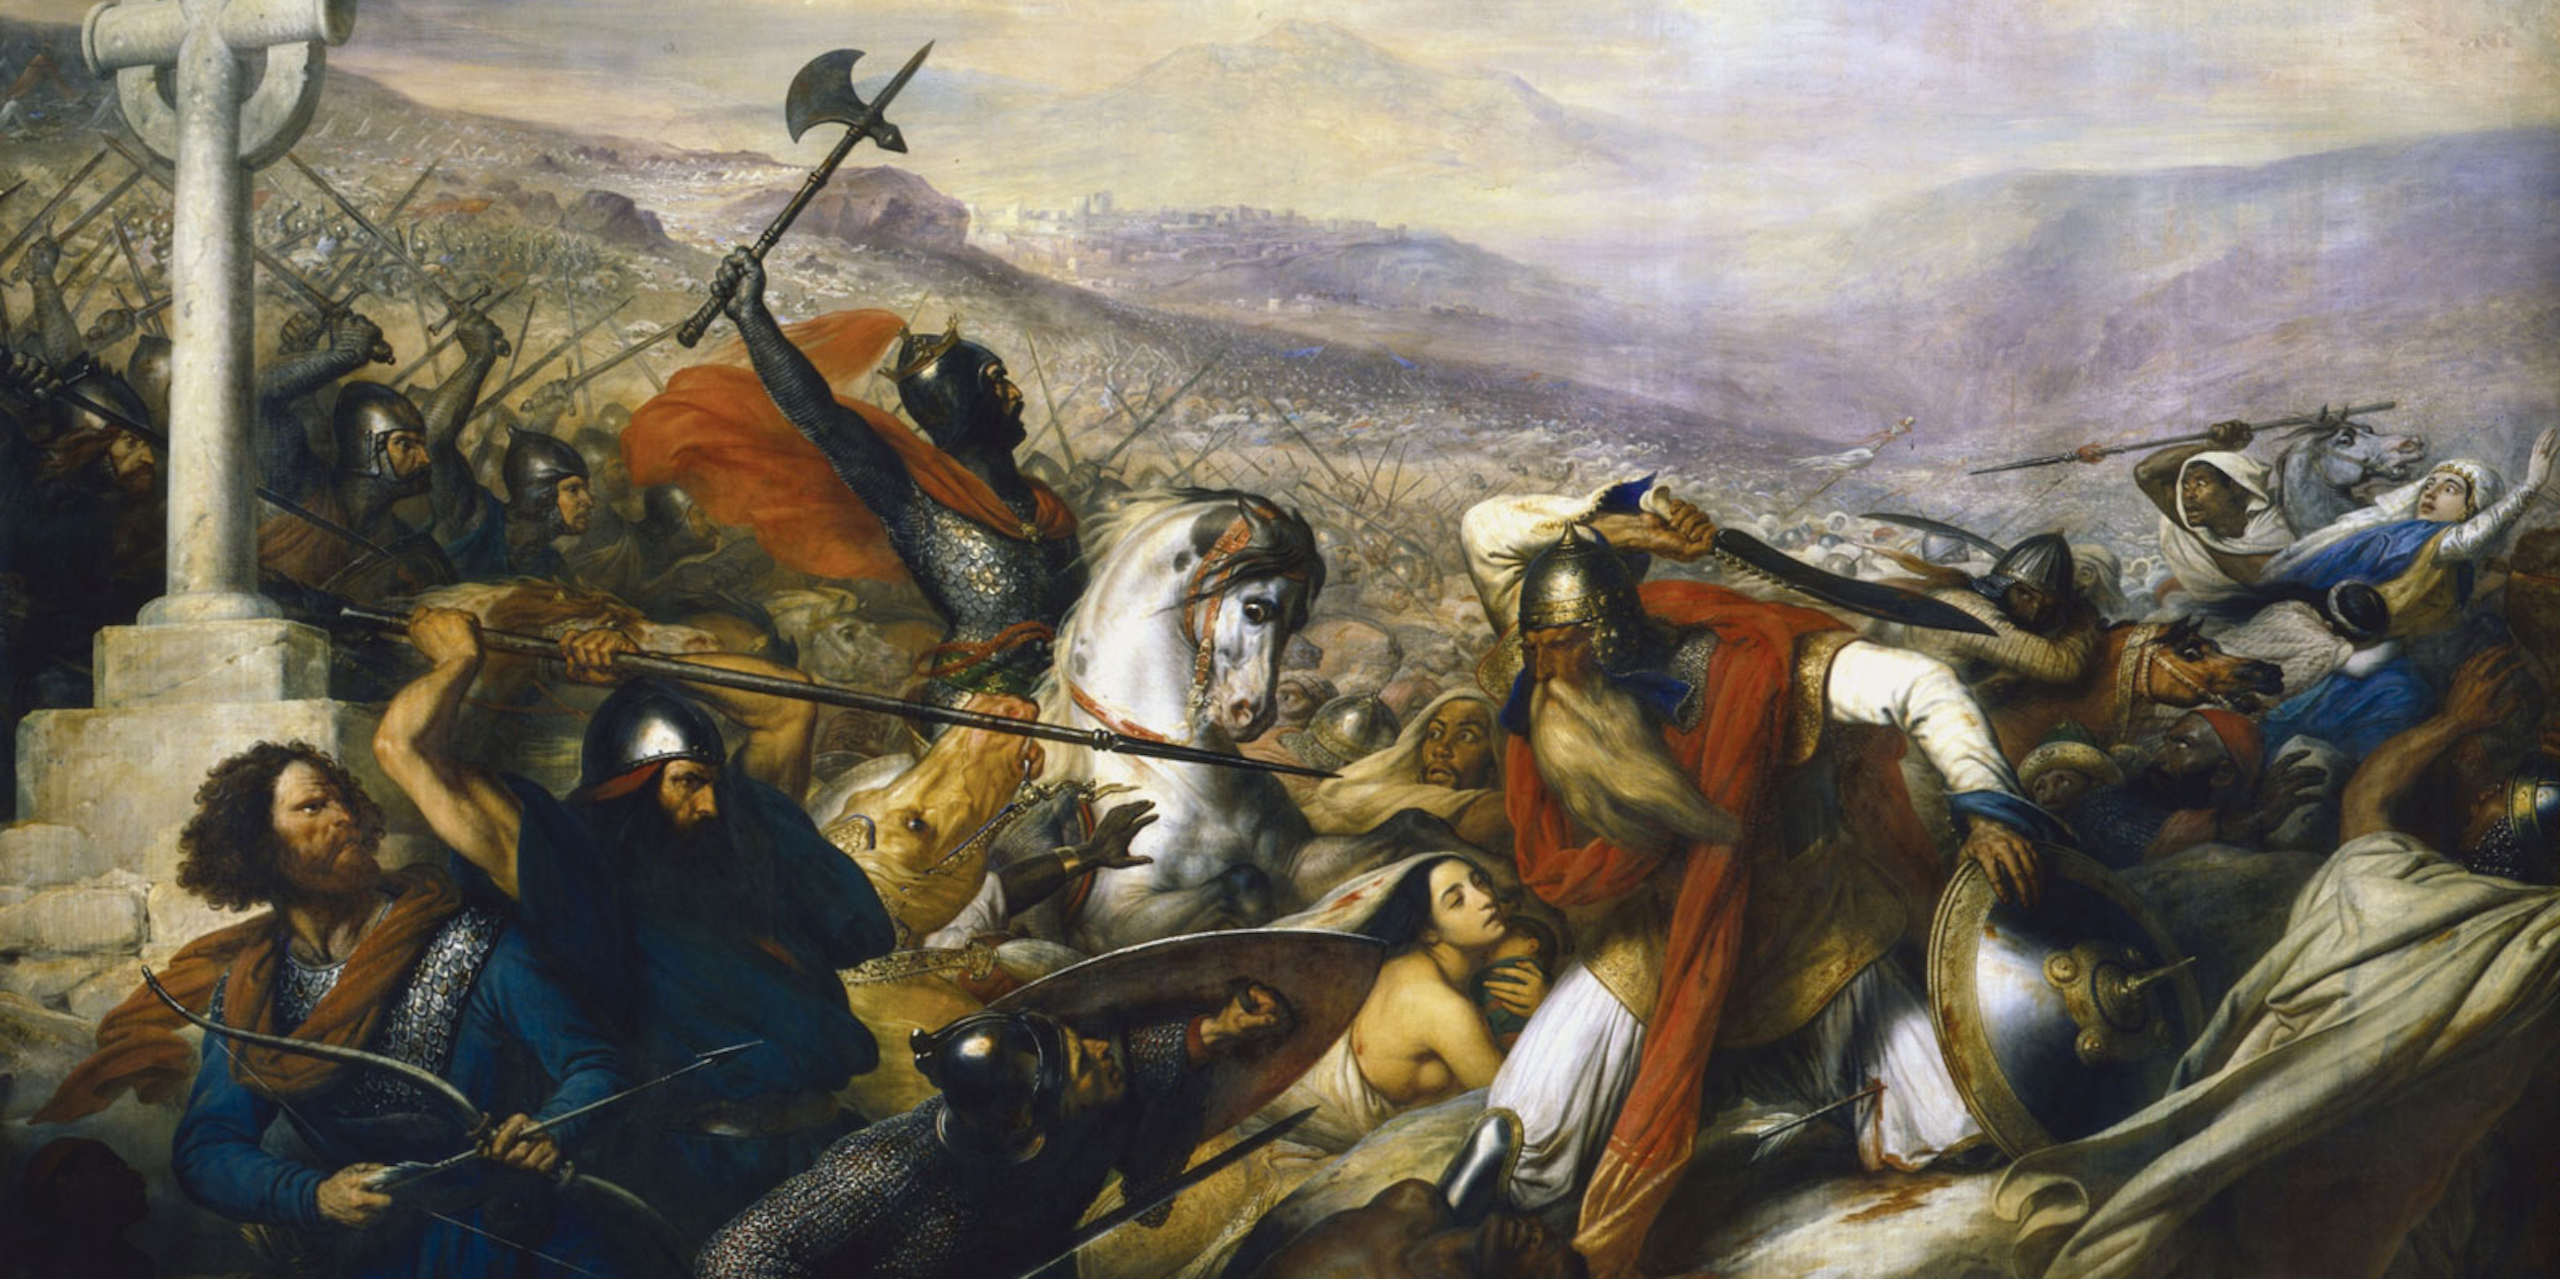 La bataille de Poitiers en 732, dépeignant un Charles Martel triomphant (chevauchant) faisant face à Abd al-Rahmân al-Rhafiqi (droite). Peinture (1837) de Charles de Steuben.